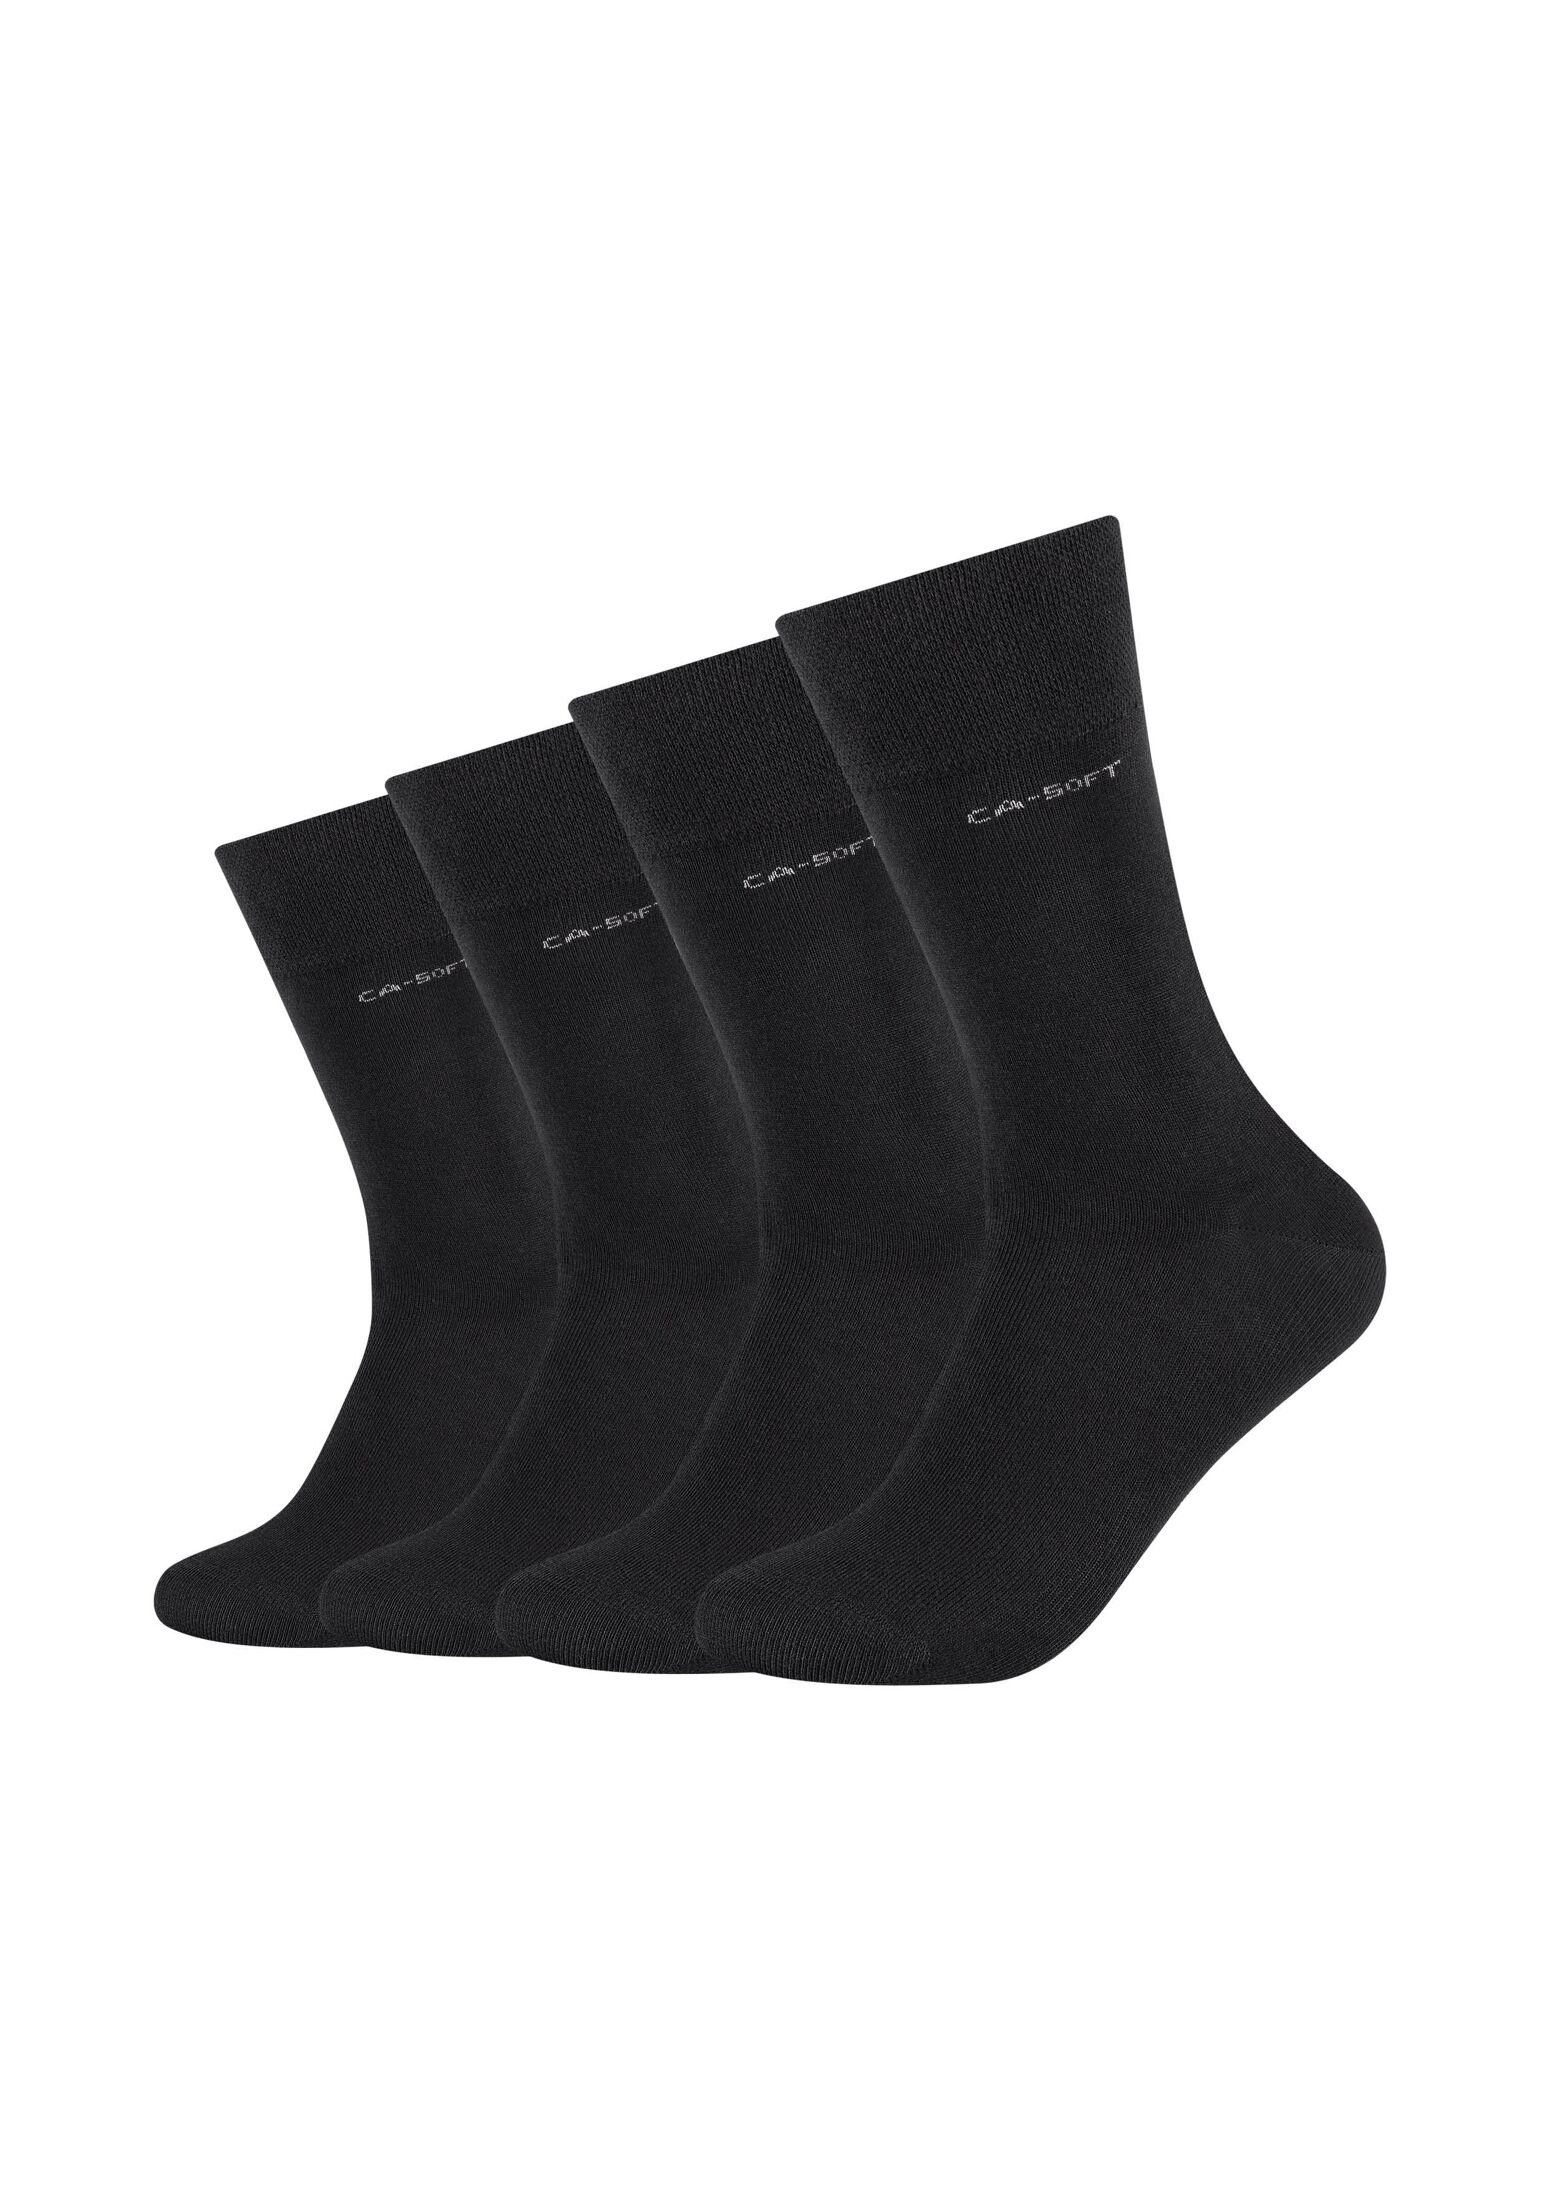 Camano Socken Socken 4er Pack black